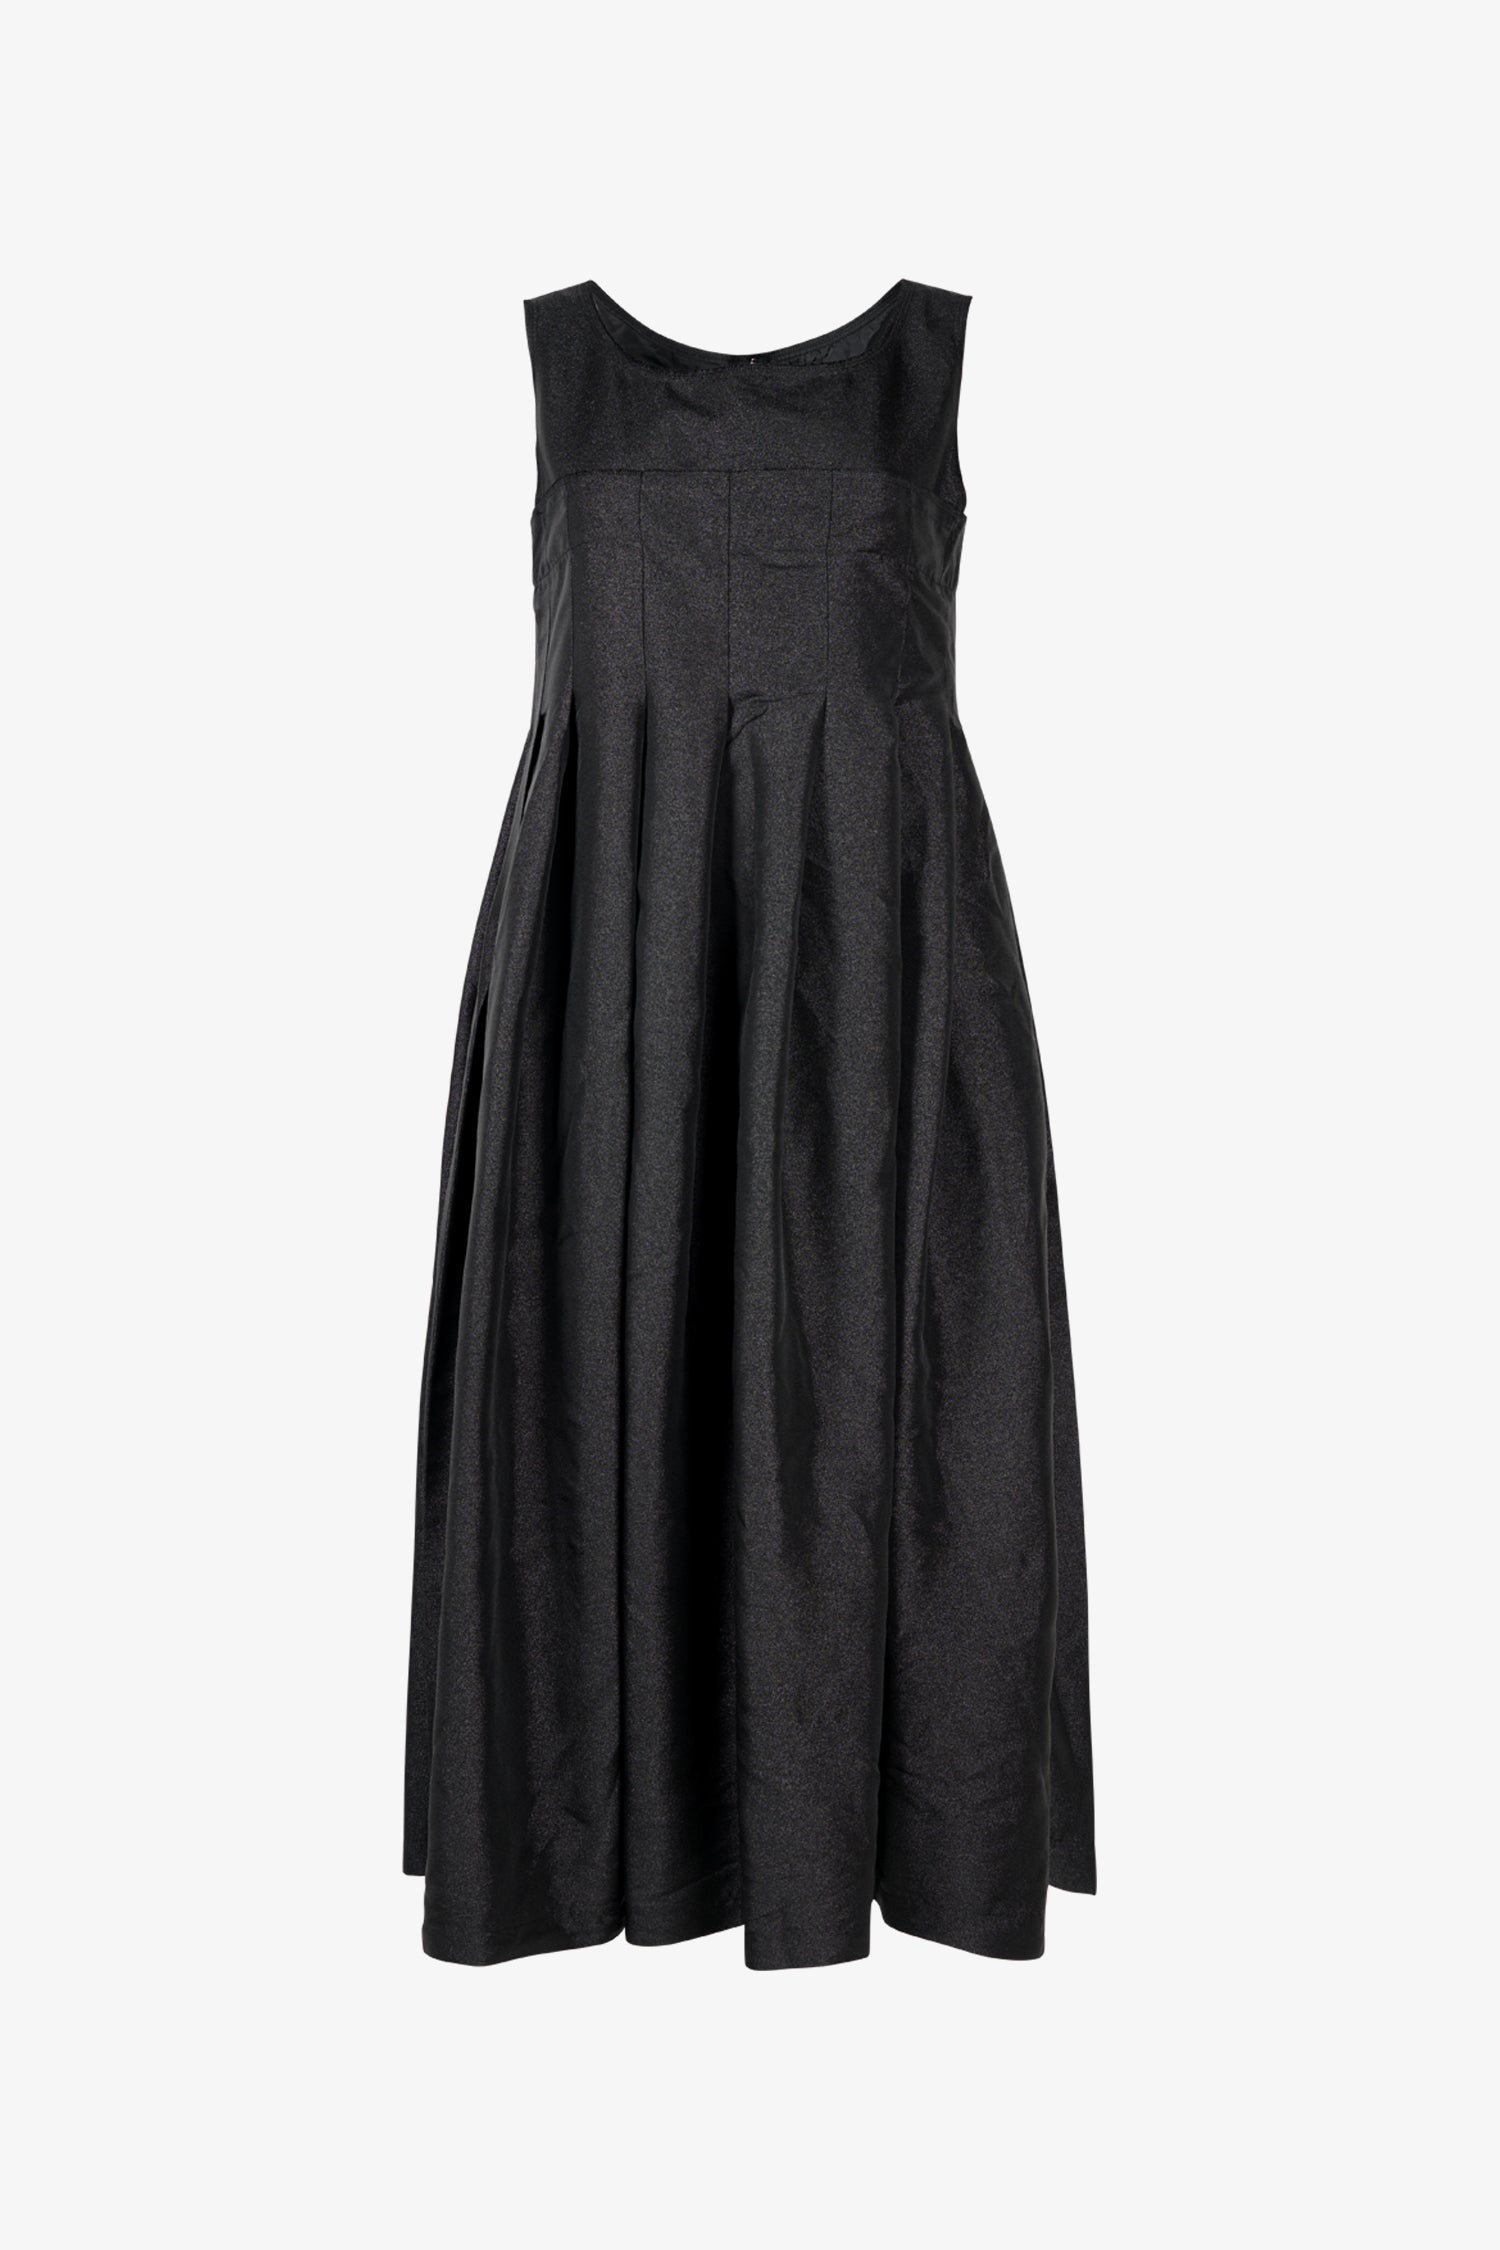 Selectshop FRAME - COMME DES GARÇONS BLACK Jumper Dress Dresses Dubai